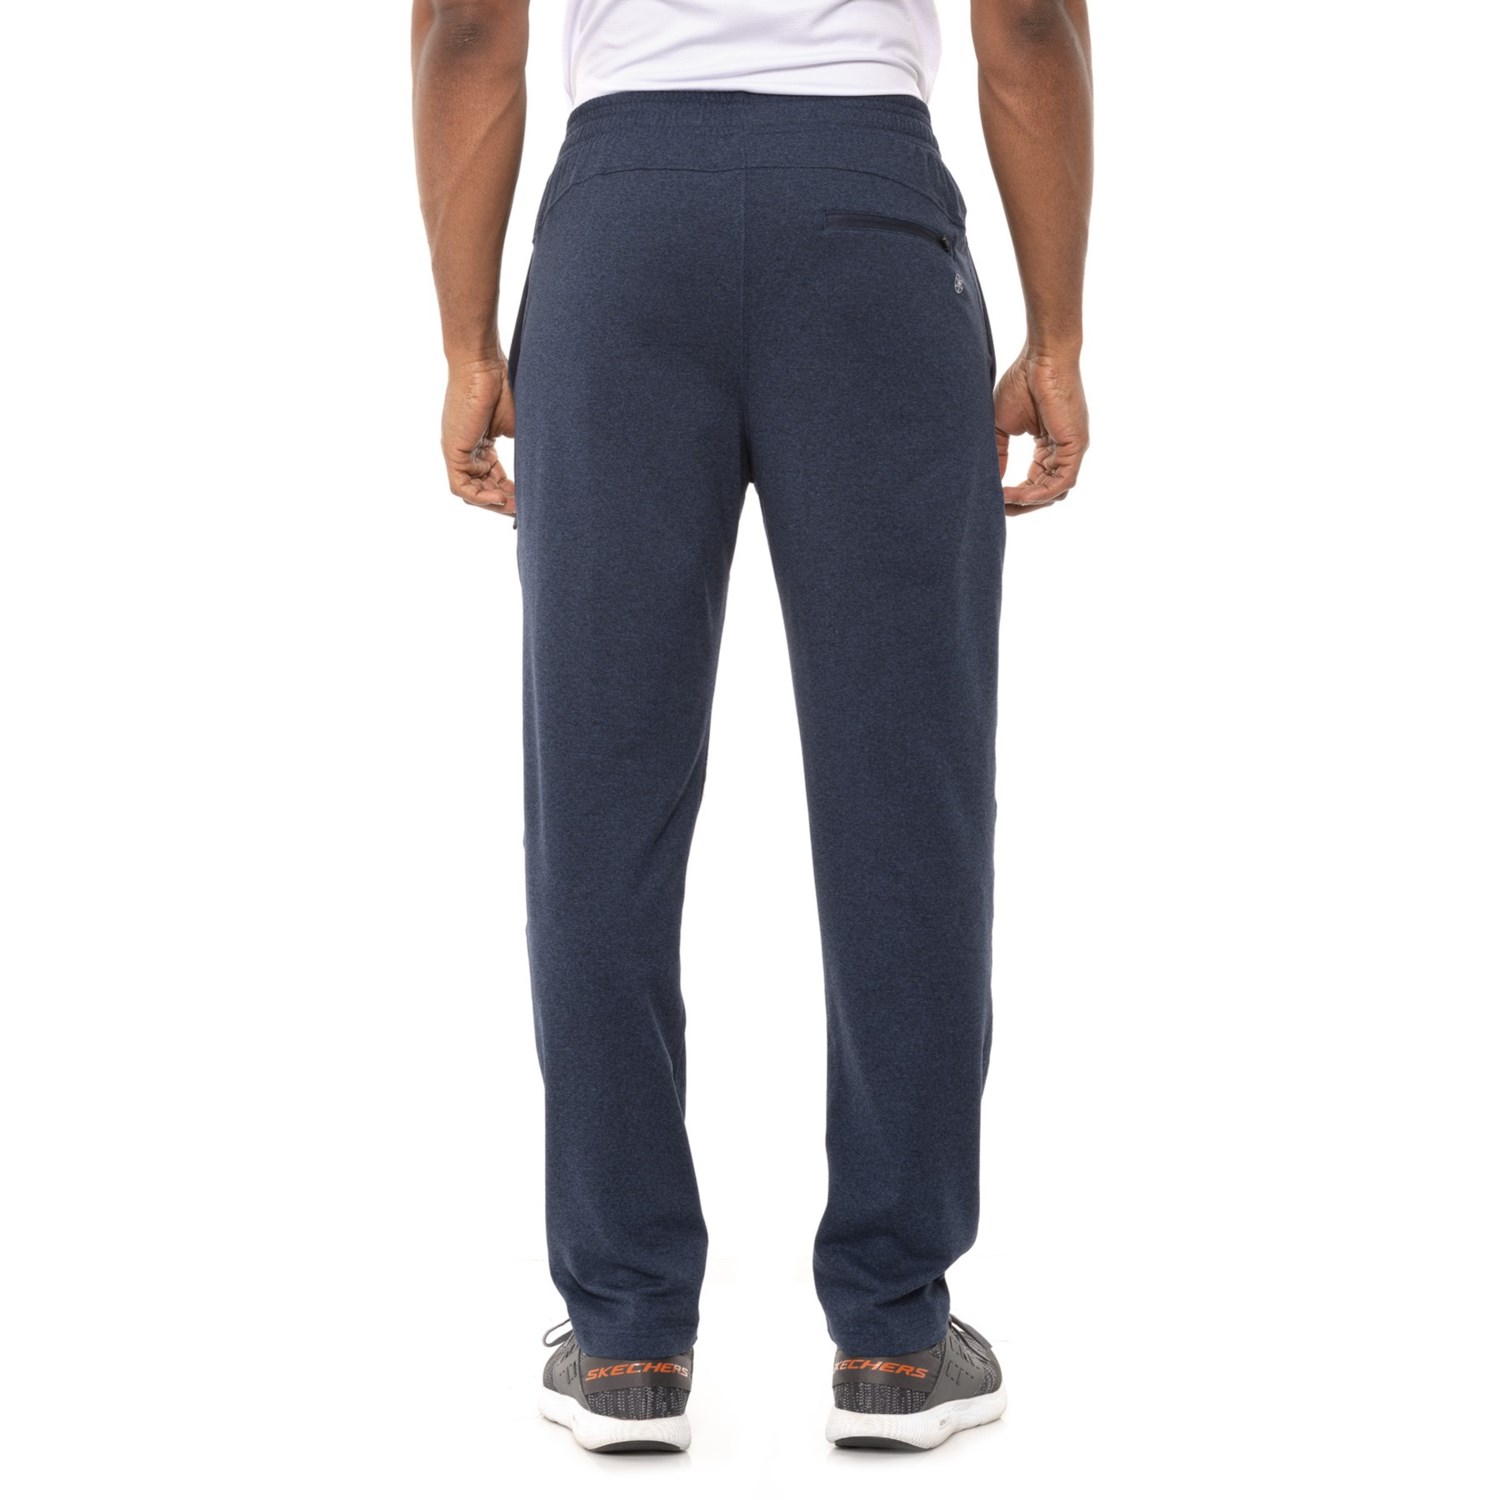 Gaiam Restorative Pants (For Men) - Save 44%